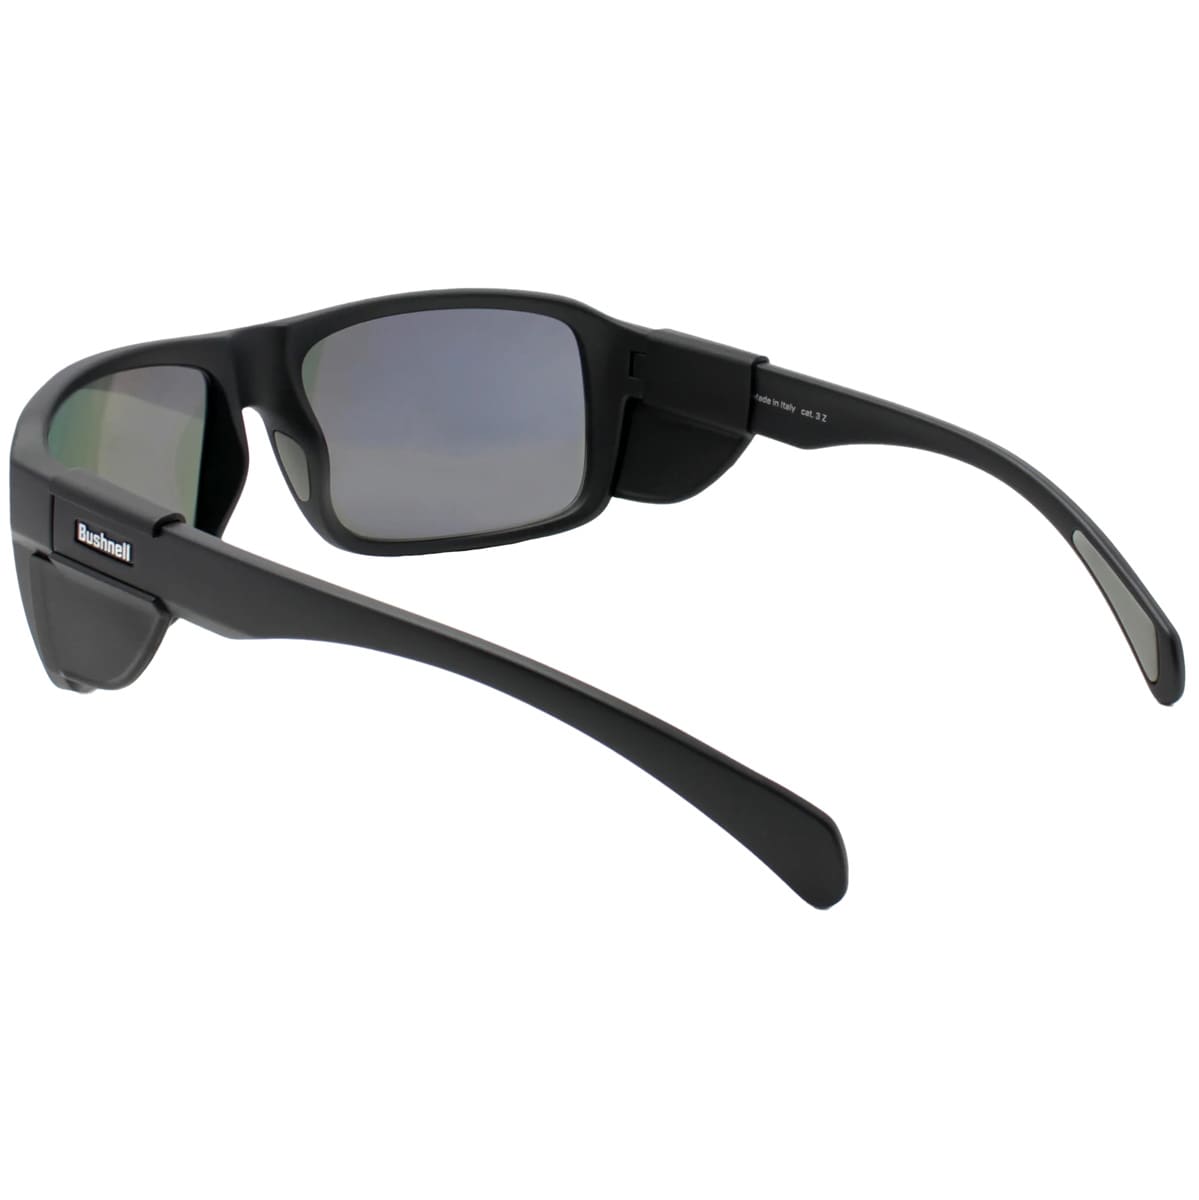 Okulary przeciwsłoneczne Bushnell Buffalo - Matte Black/Grey Mirror